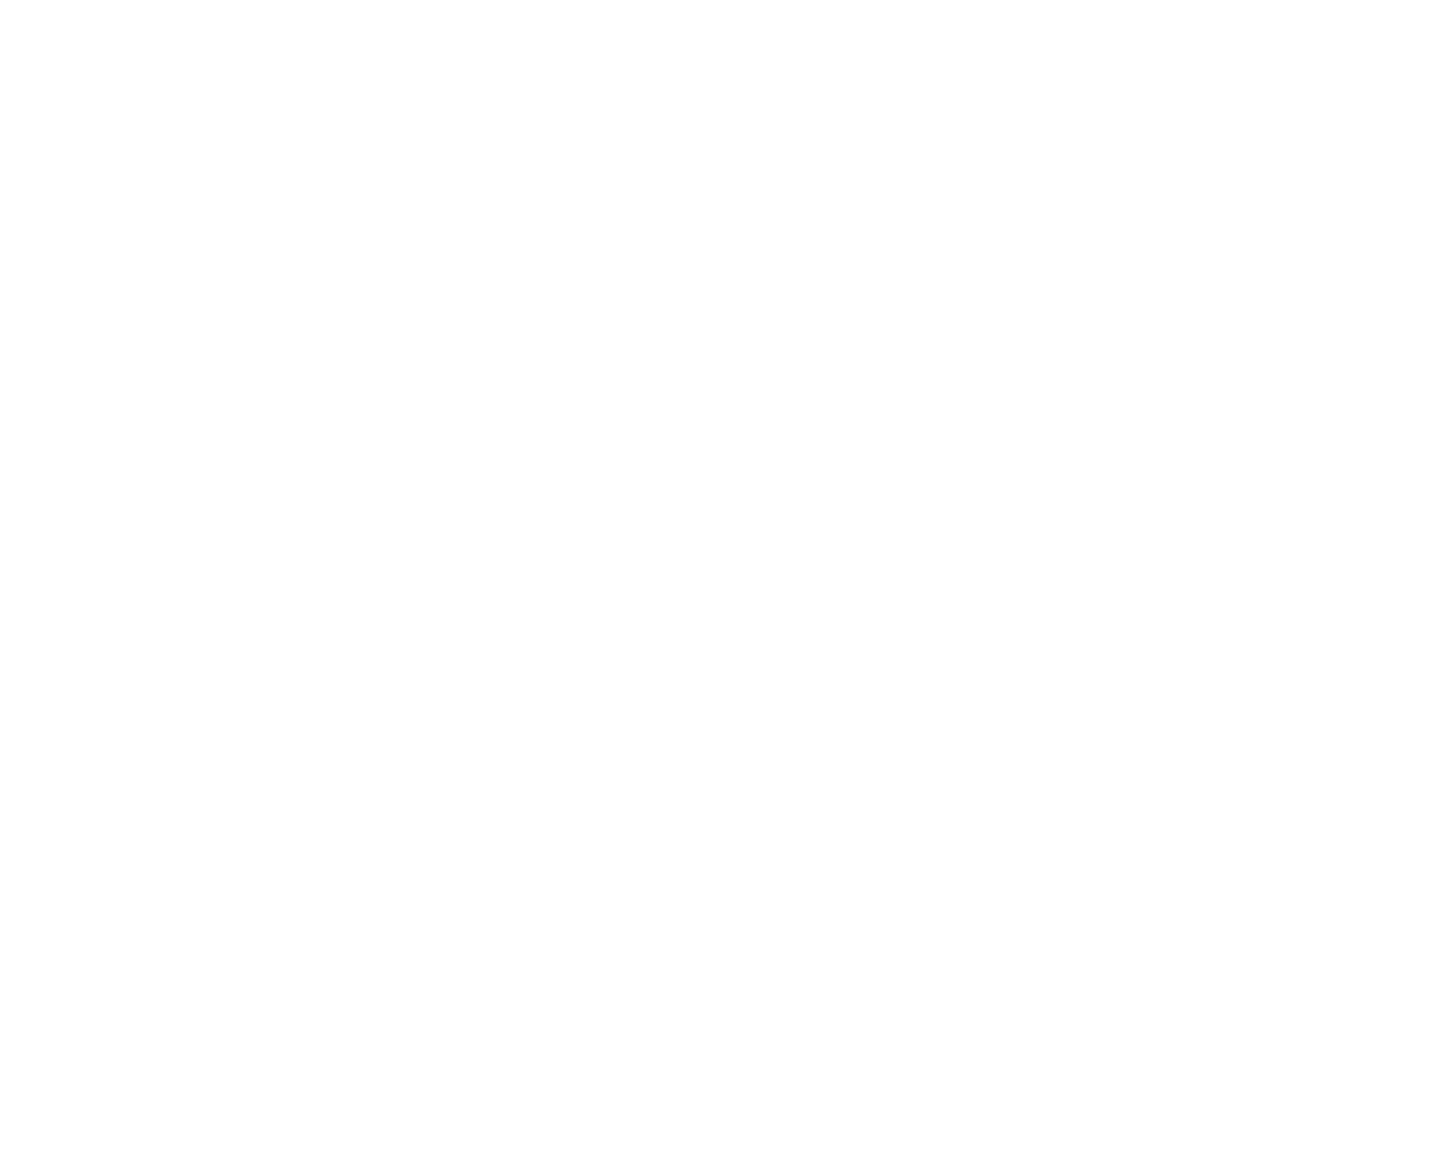 Vetmor Partners